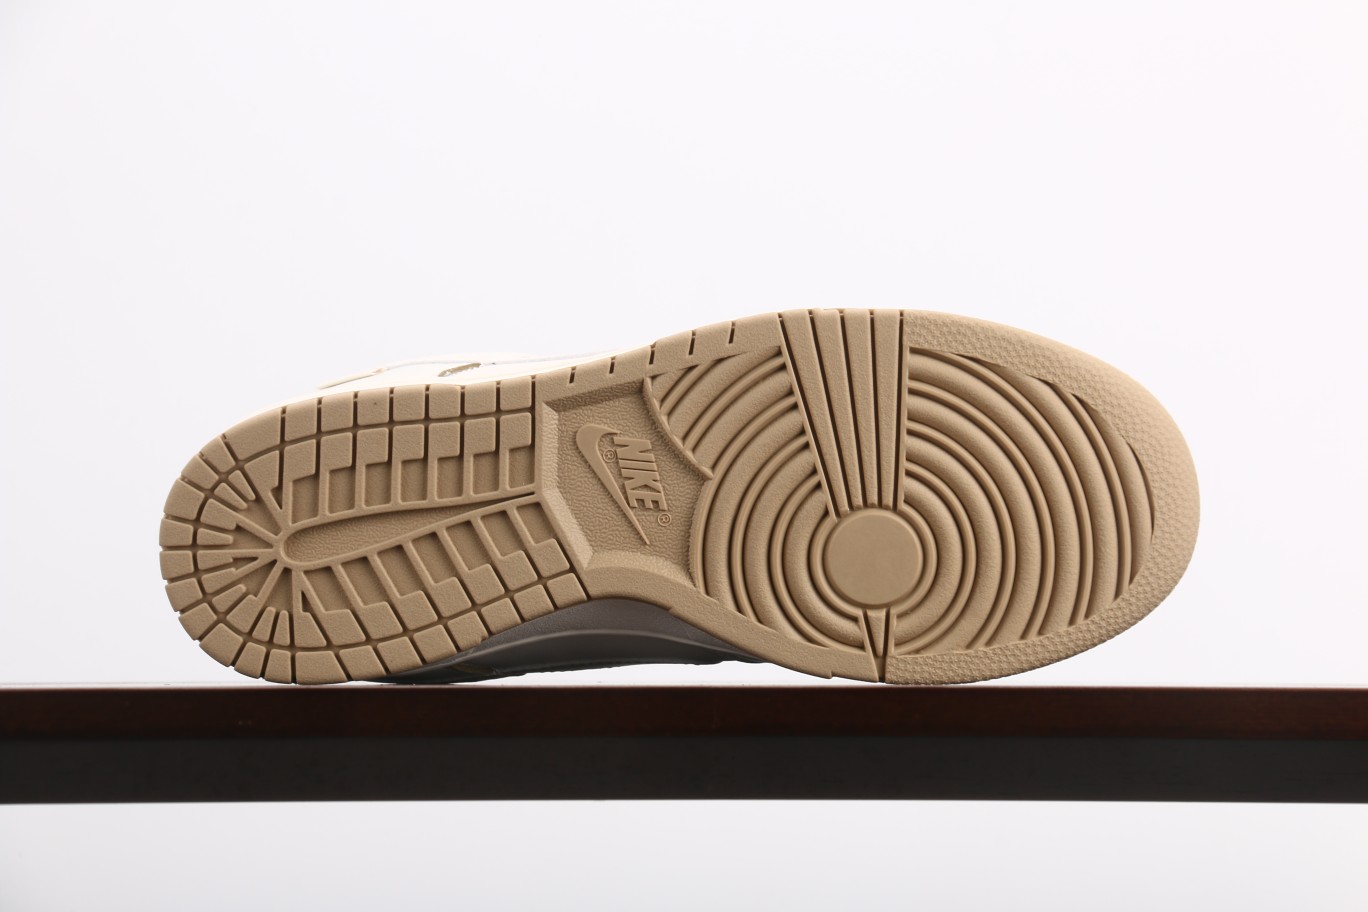 NikeDunkLow珠光金此款鞋采用近几年比较流行的版型设计外观时尚大气鞋底采用耐磨的材质穿上它让您在